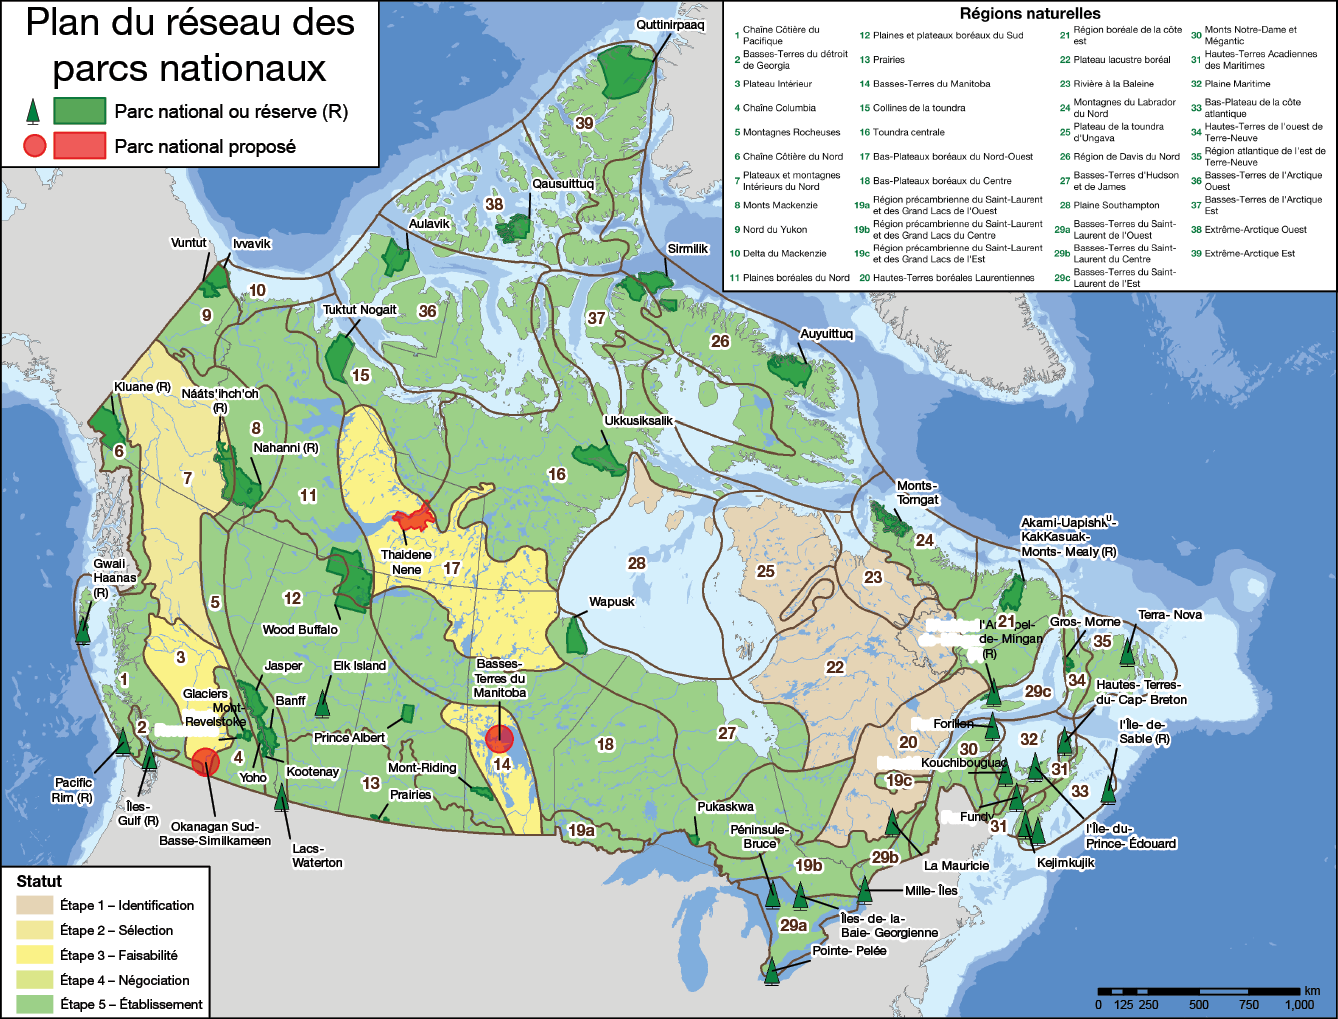 Figure 1 : Plan du réseau des parcs nationaux